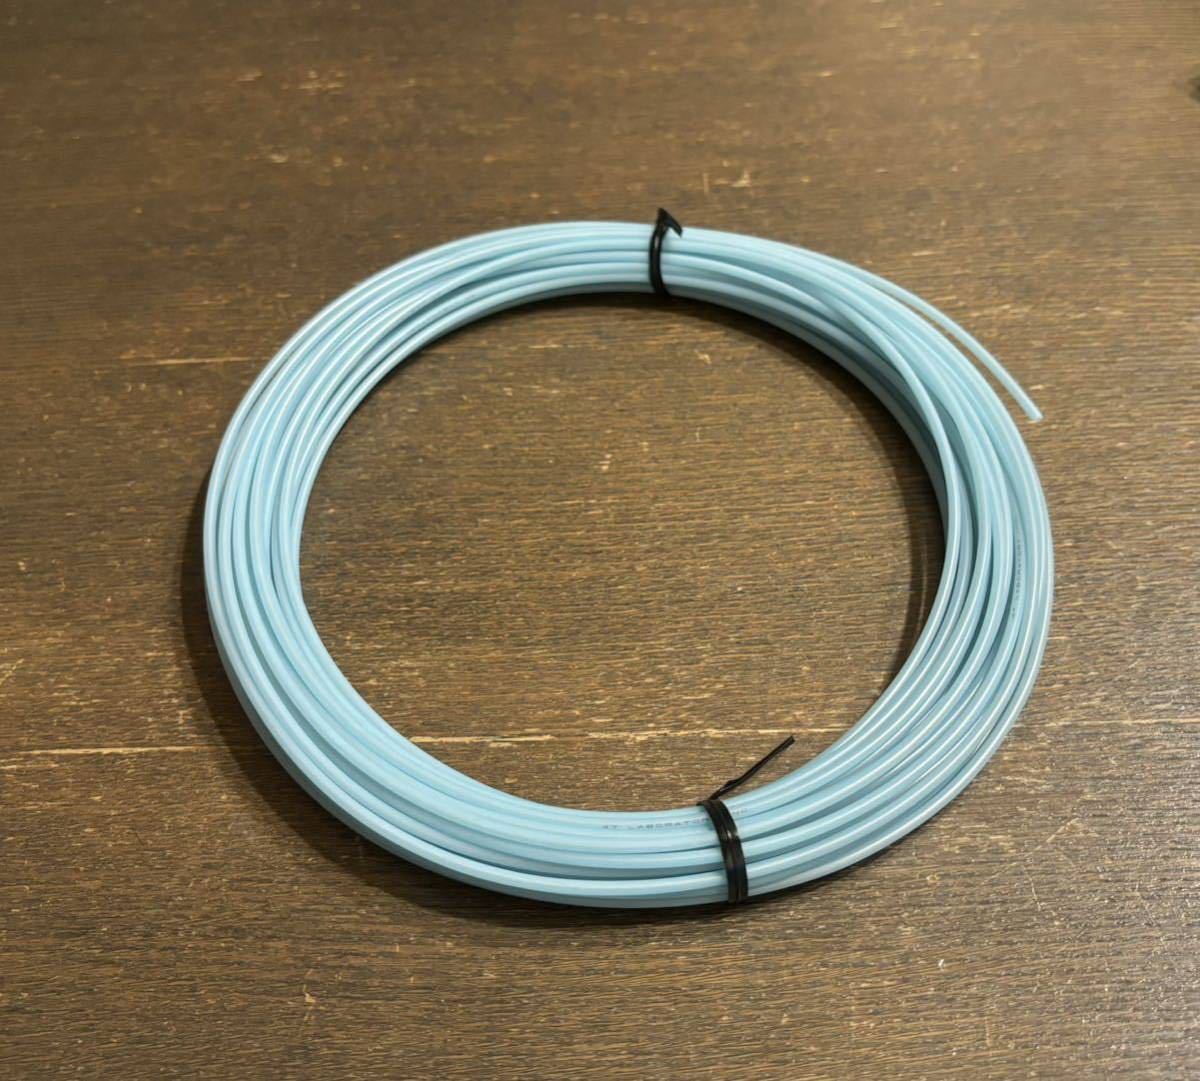  собственное производство для кабель 47 изучение место 0.65mm одиночный линия 1m. электропроводка материал, внутри часть электропроводка, спикер-кабель . пожалуйста.